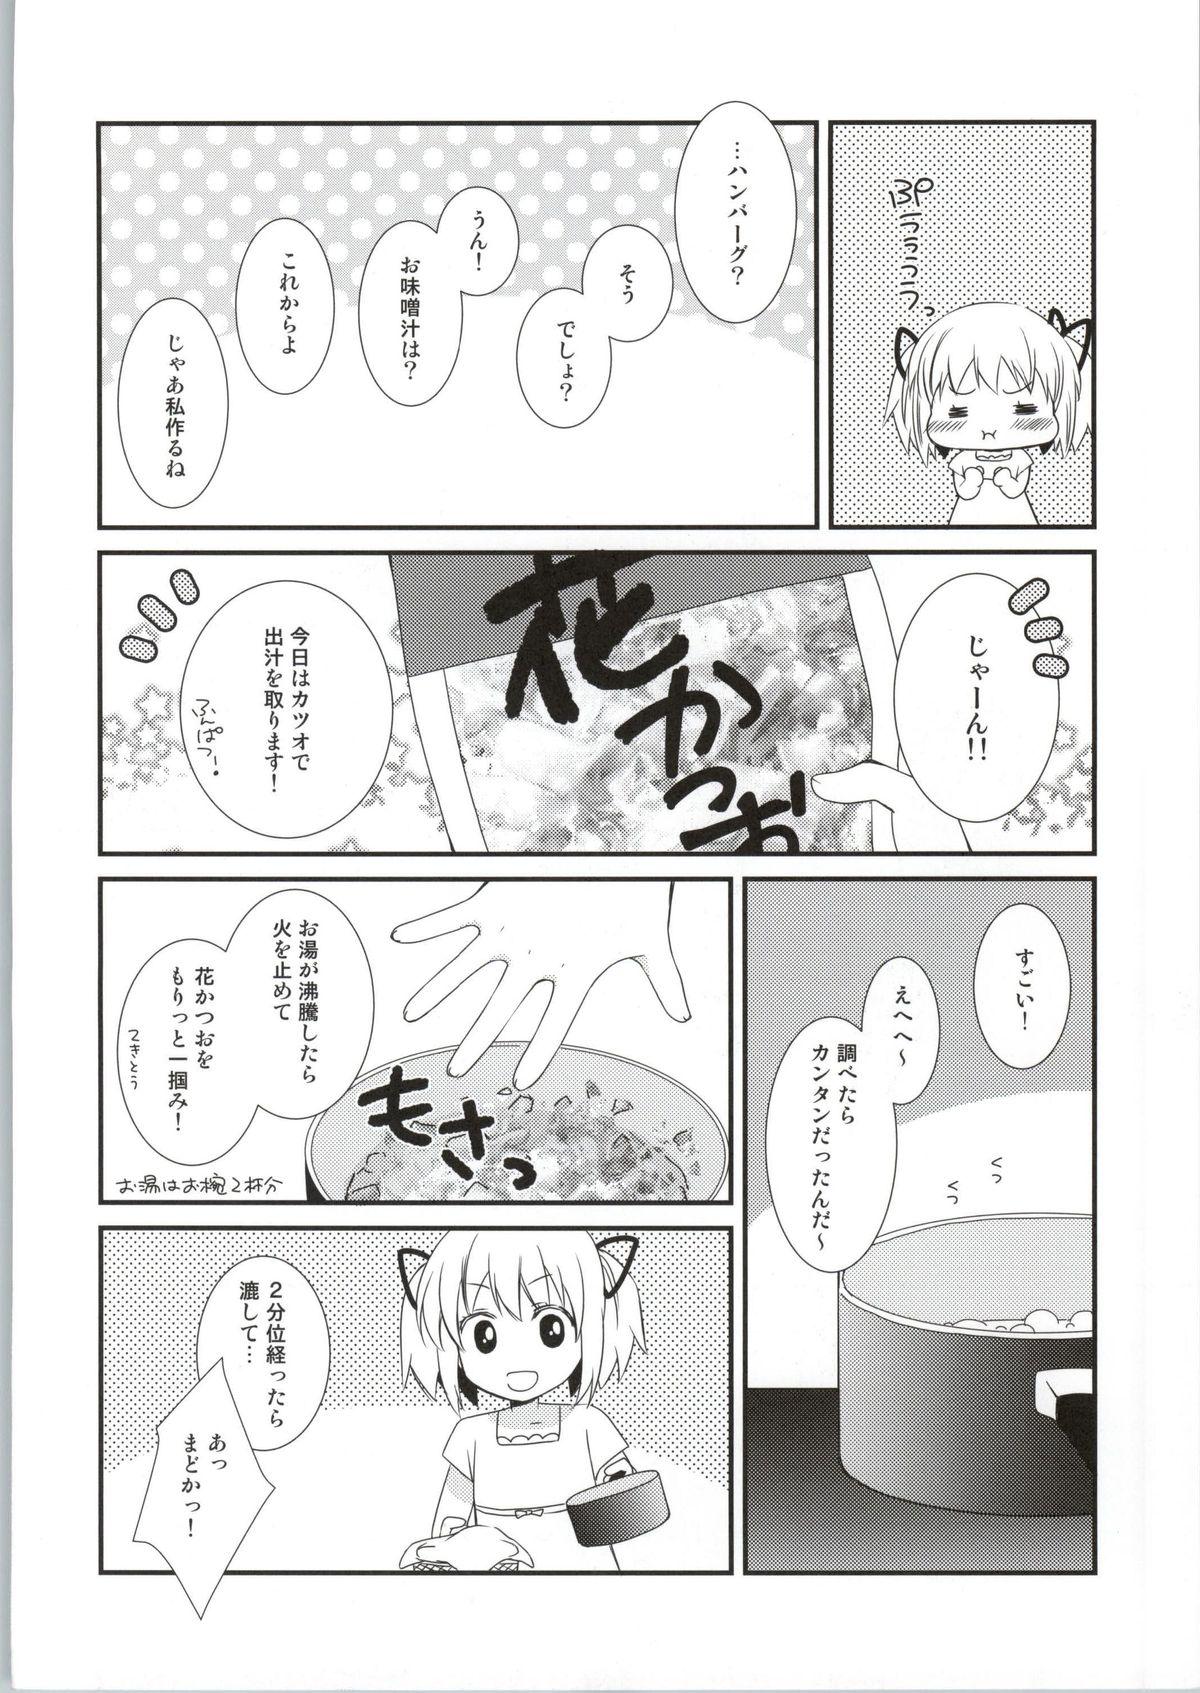 Hardcore Sengyou Shufu no Sentou Fuku wa - Puella magi madoka magica Masturbation - Page 11